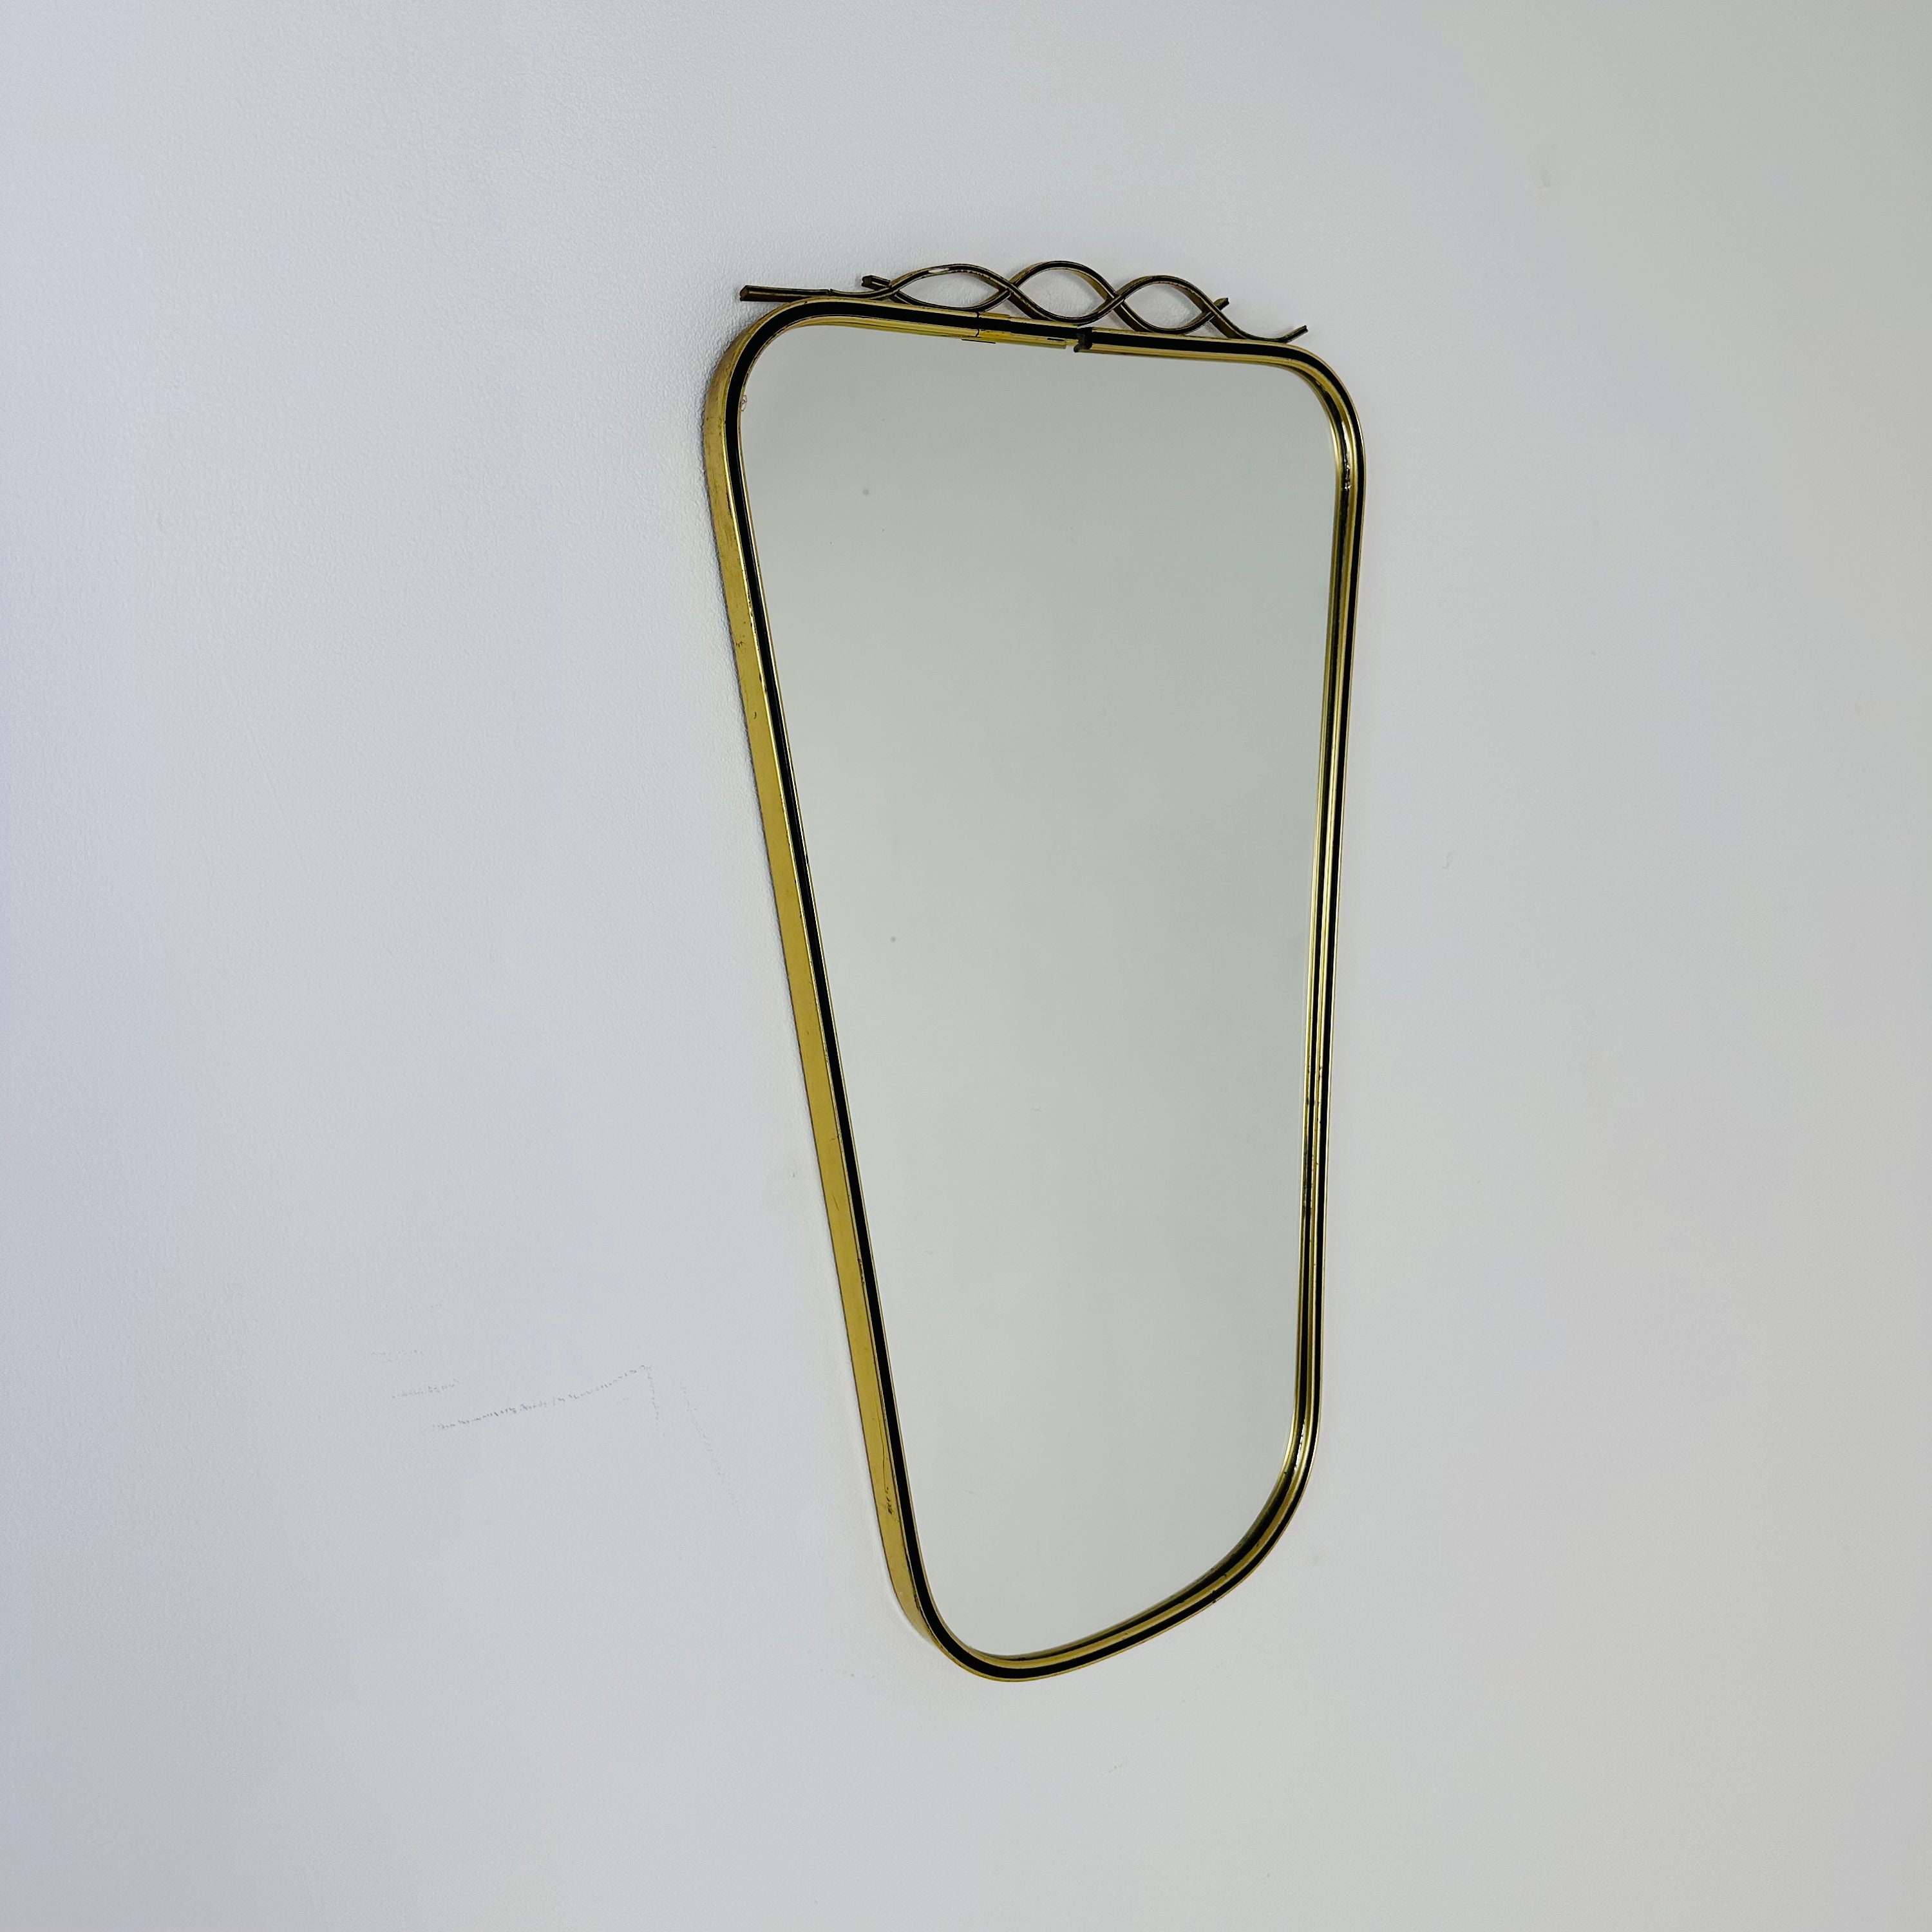  YCHMIR Vintage Spiegel klein Wandspiegel Hängespiegel 36,8 x  25,4 cm oval Gold